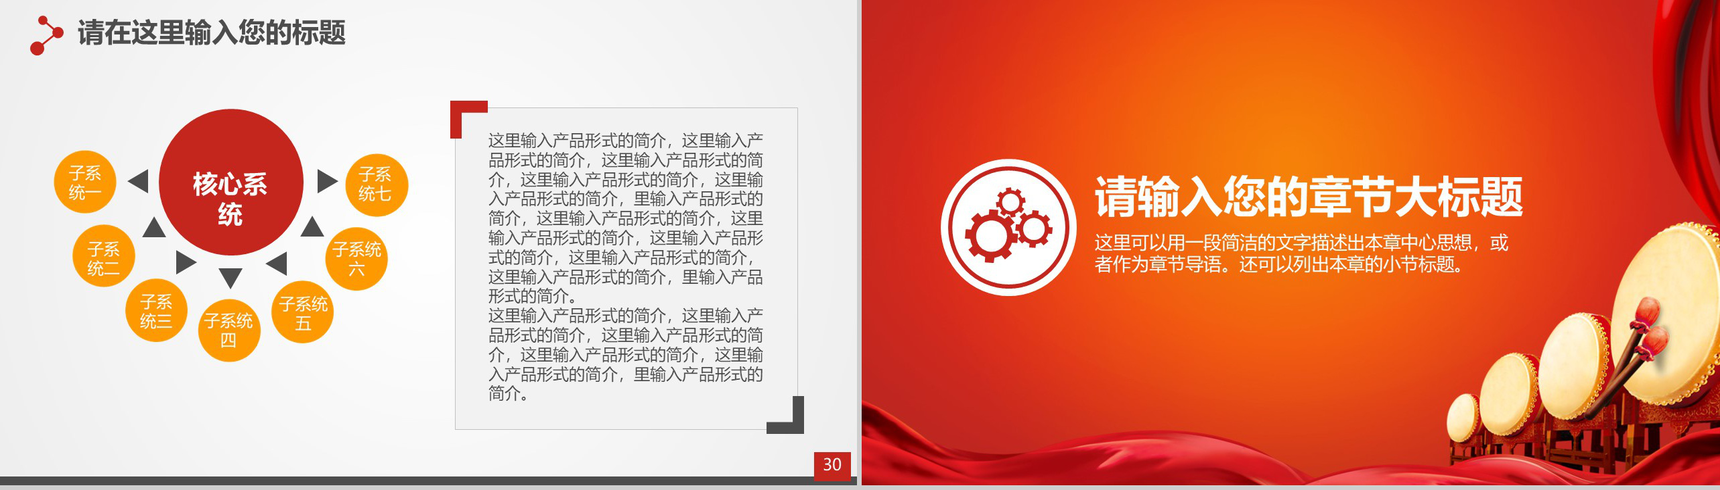 喜庆中国风企业签约仪式PPT模板-16